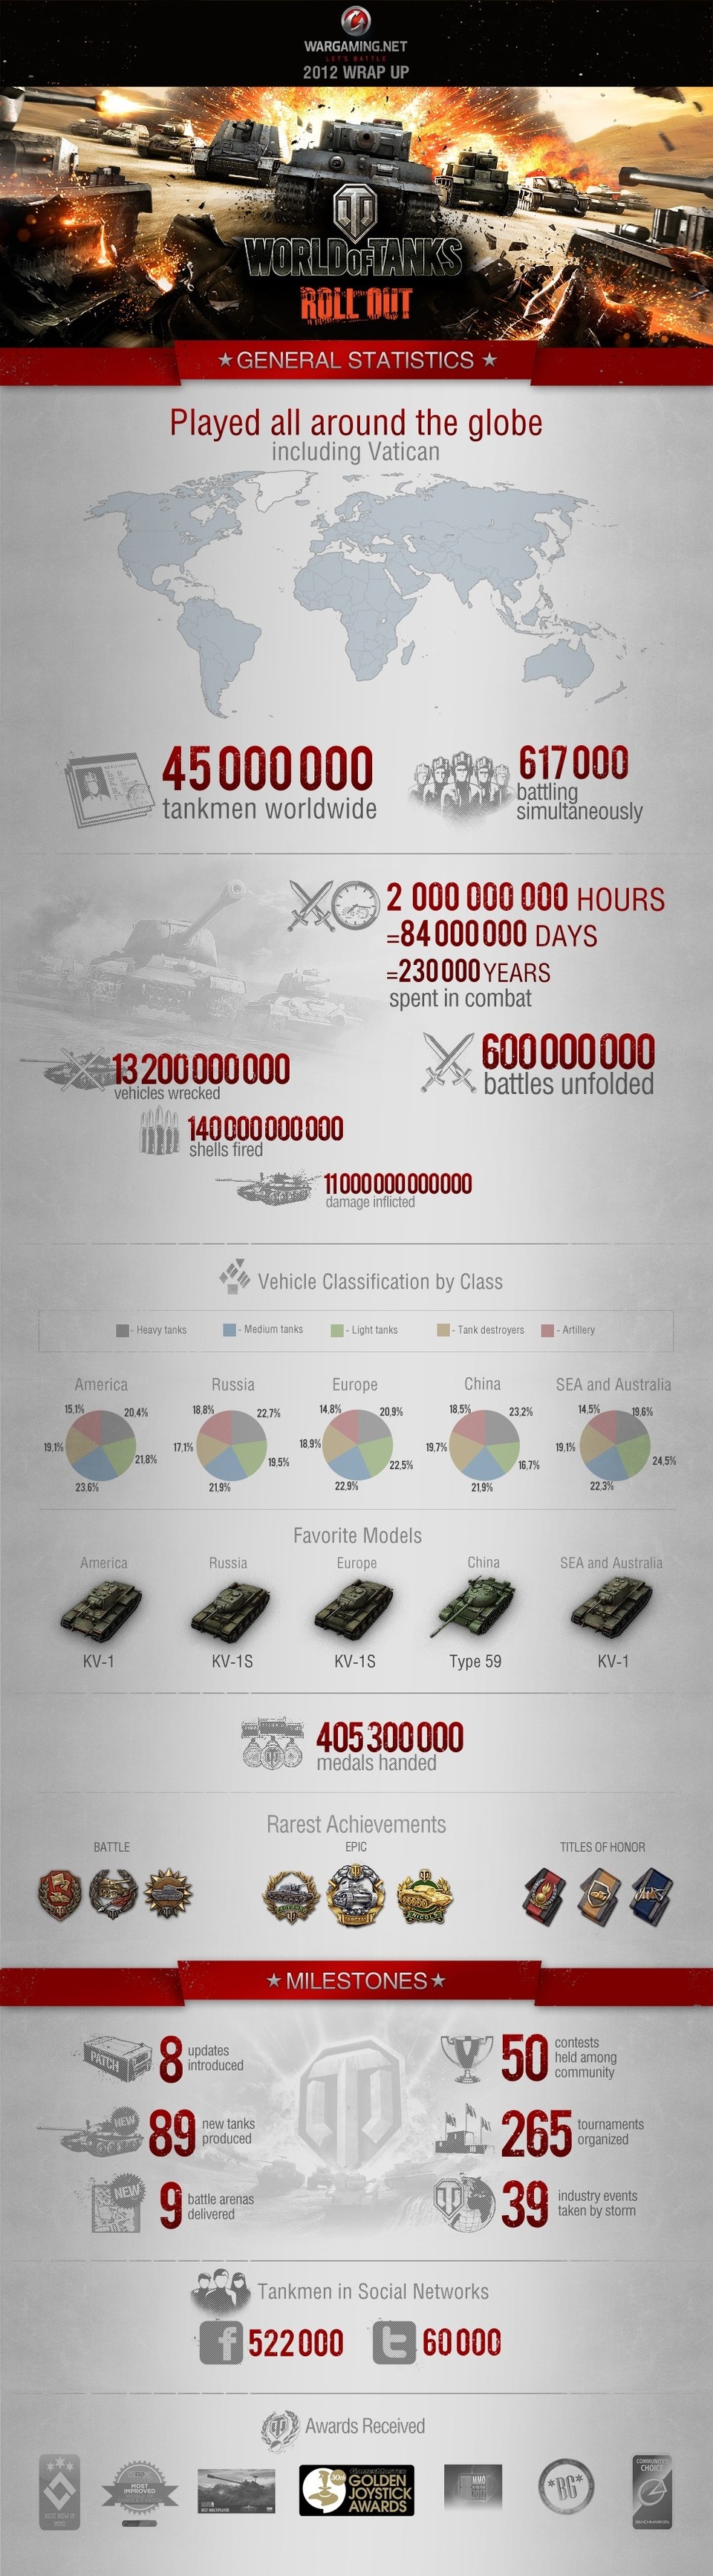 Allerhand Statistiken zu World of Tanks.